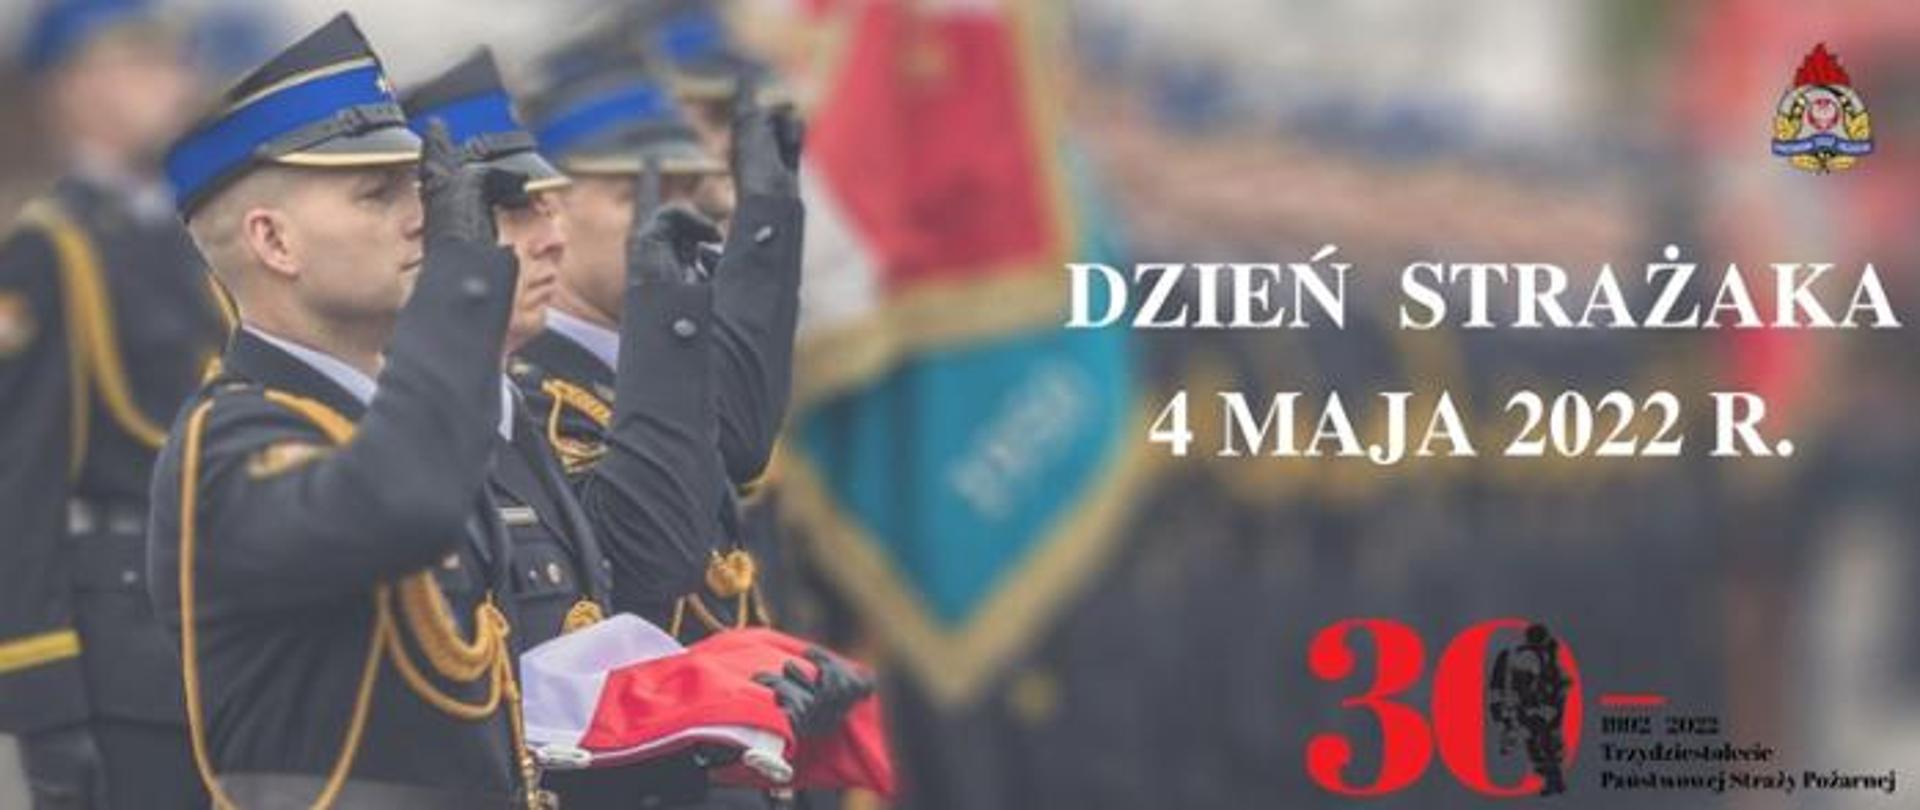 umundurowani strażacy salutujący, jeden z nich trzyma złożoną flagę państwową, logo PSP oraz 30- lecia PSP oraz napis Dzień Strażaka 4 maja 2022 r.